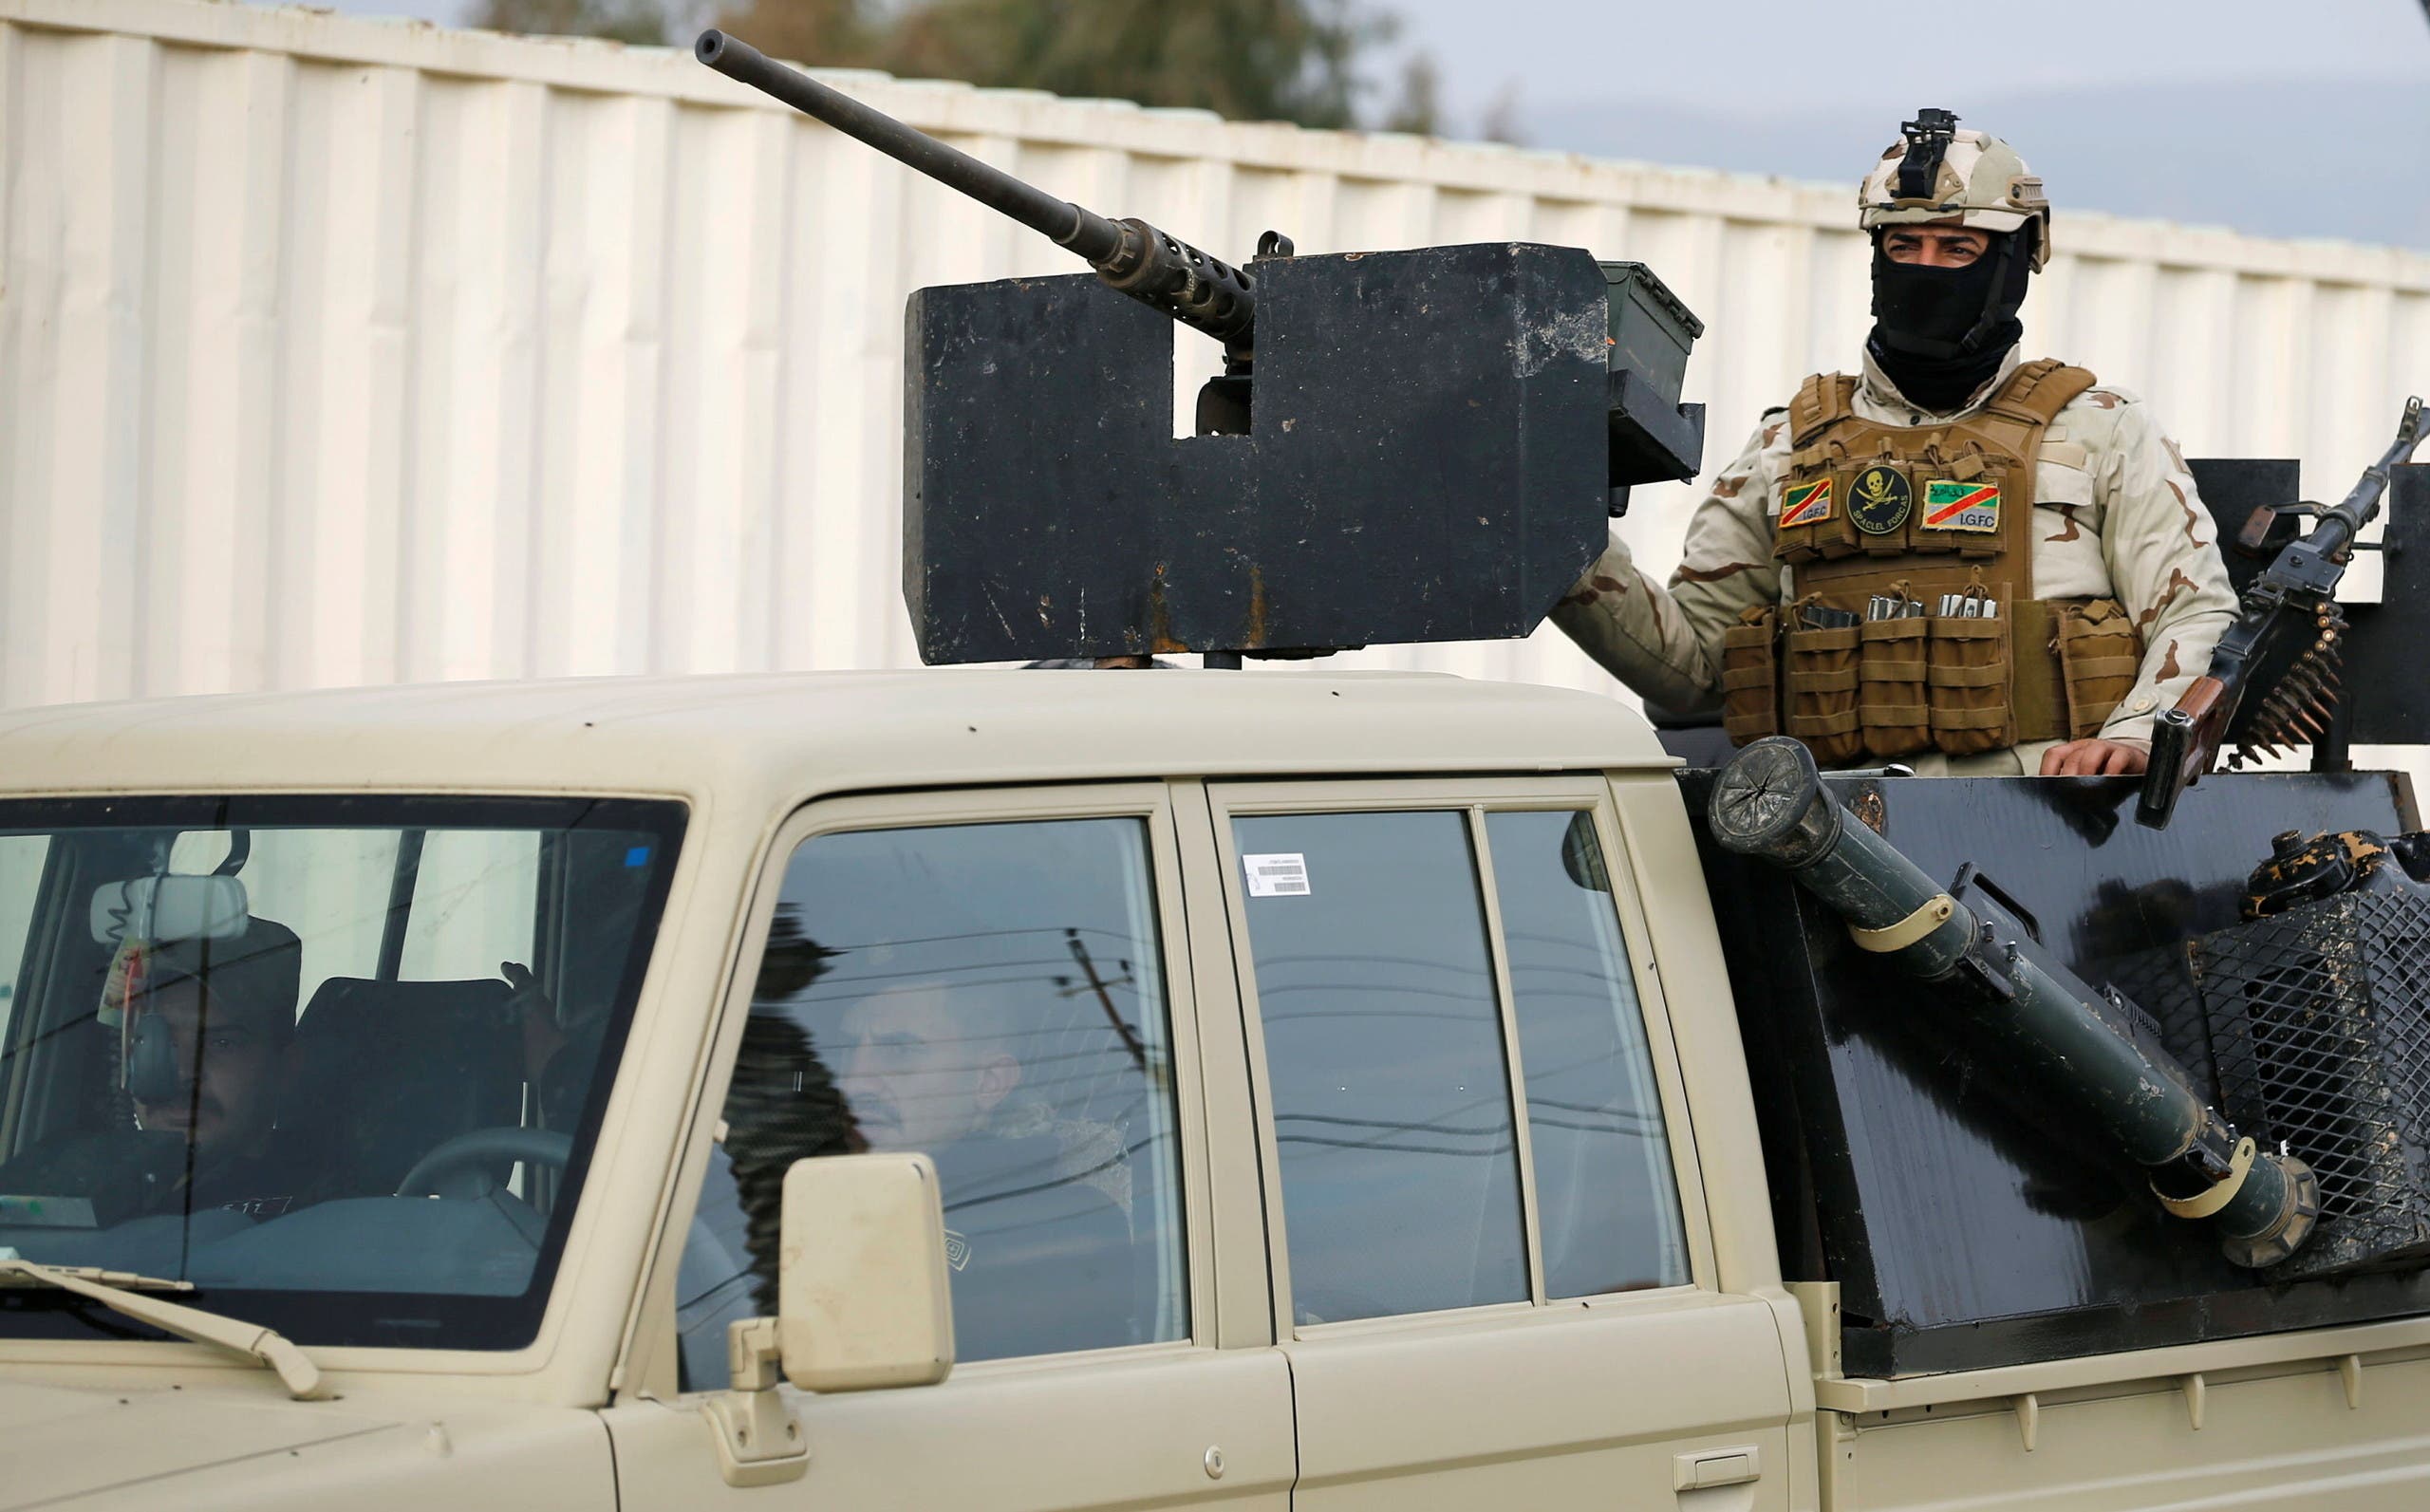 بغداد.. قوات مكافحة الإرهاب تنتشر بالمنطقة الخضراء